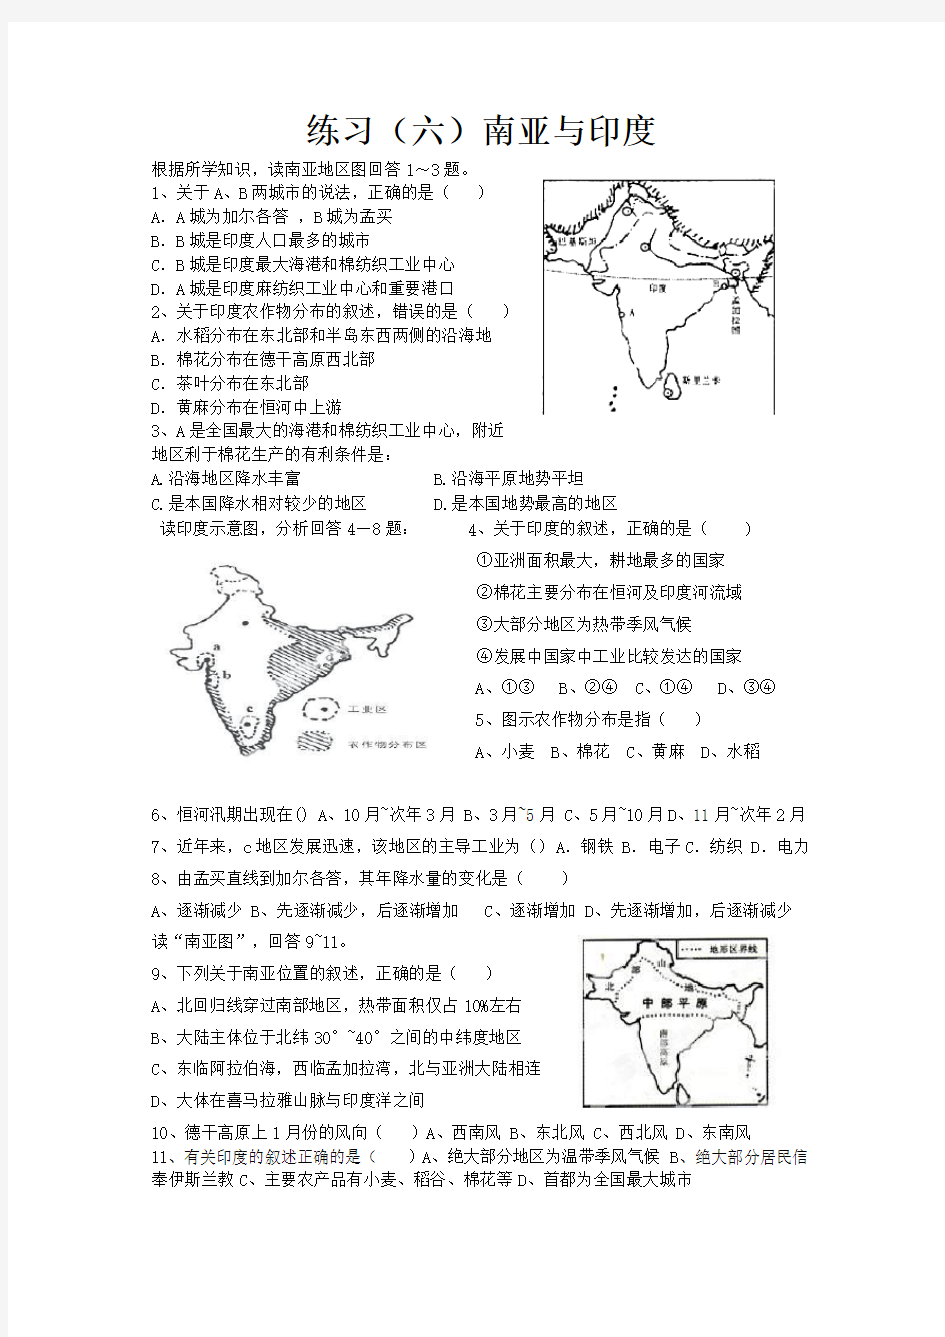 世界地理分区系列练习题练习(六)南亚与印度